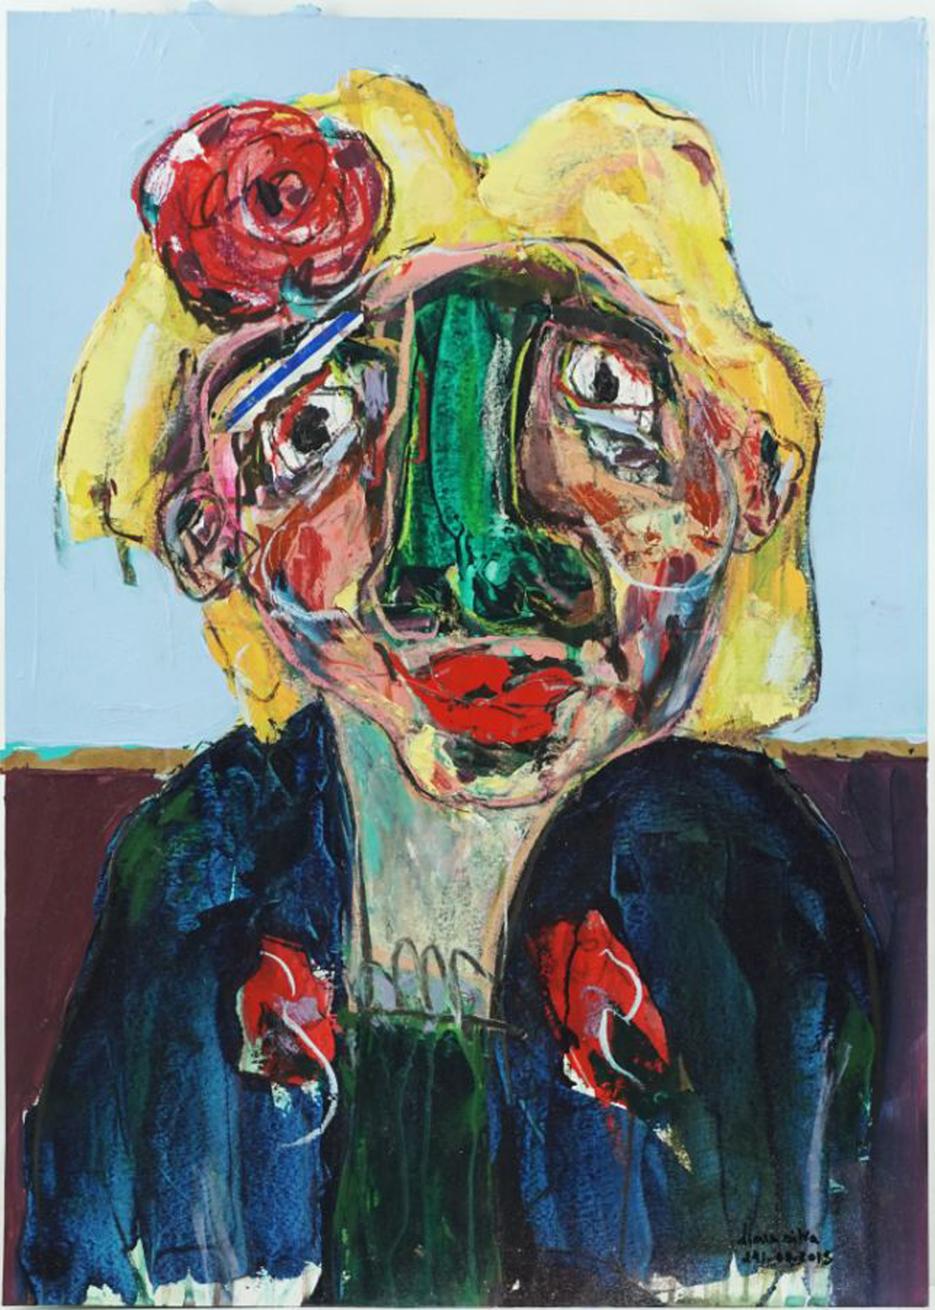 Art contemporain, Composition expressionniste figurative sur papier, technique mixte, 2018